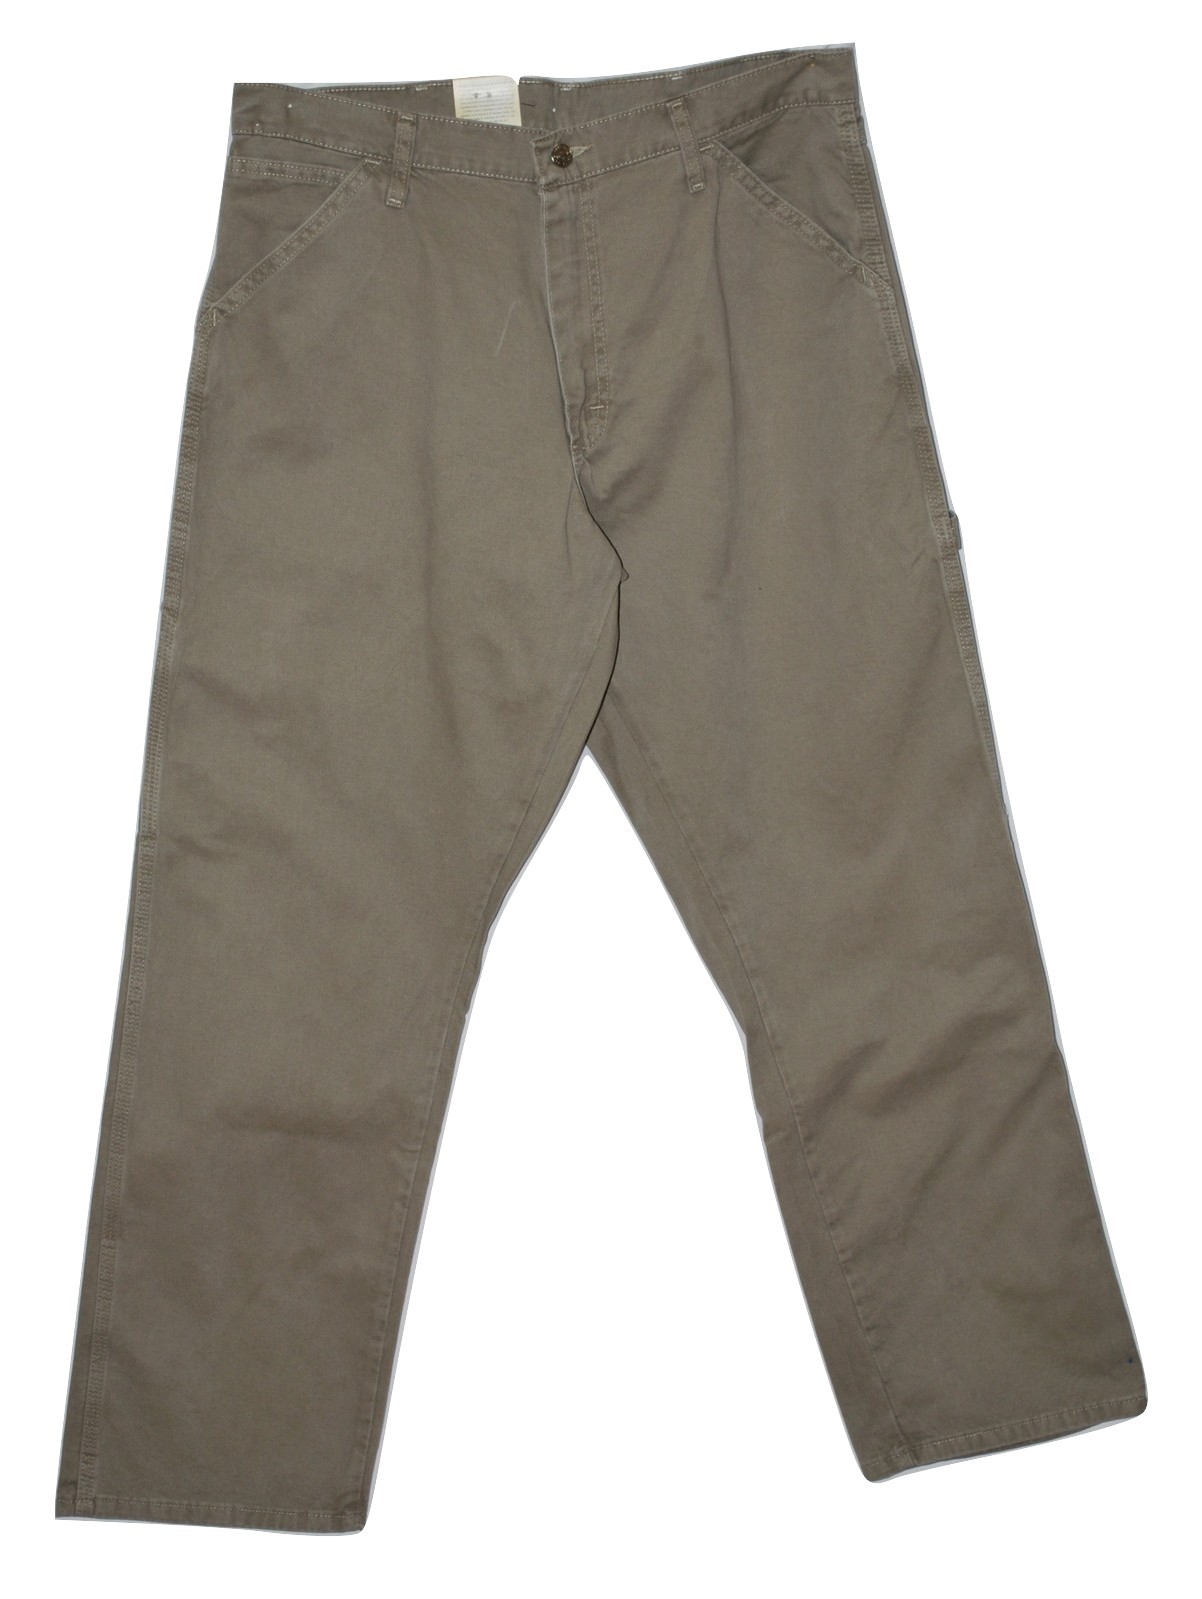 Wrangler Men's Relaxed Fit Carpenter Jeans - British Khaki 34x30 - Men ...